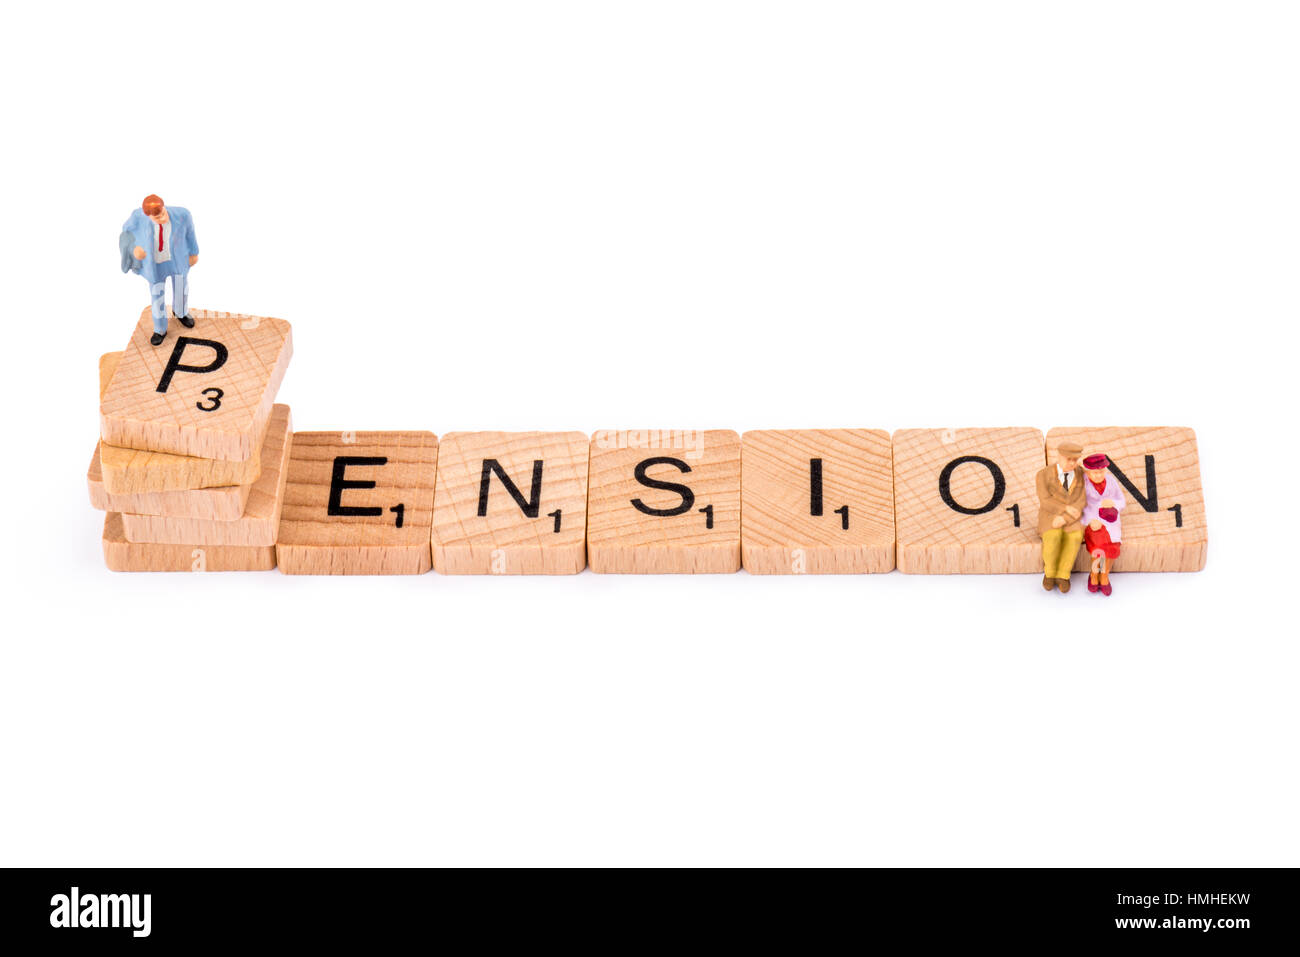 Scrabble lettere costituiscono la parola PENSIONE. Un uomo si erge sulla cima della lettera P della pensione, mentre una coppia di anziani sedersi alla fine sulla lettera N. Foto Stock